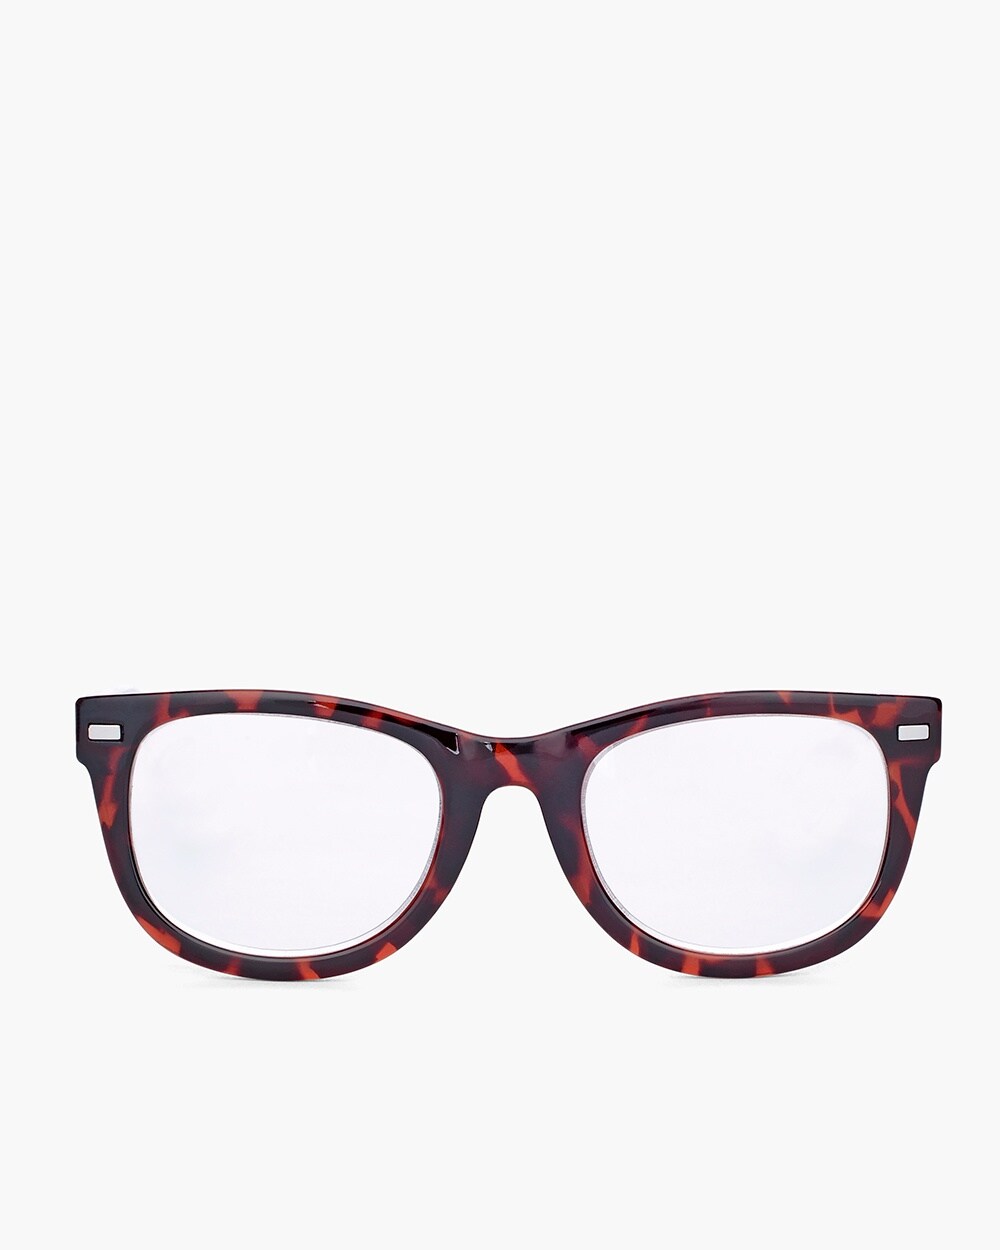 Red Faux-Tortoiseshell Reading Glasses